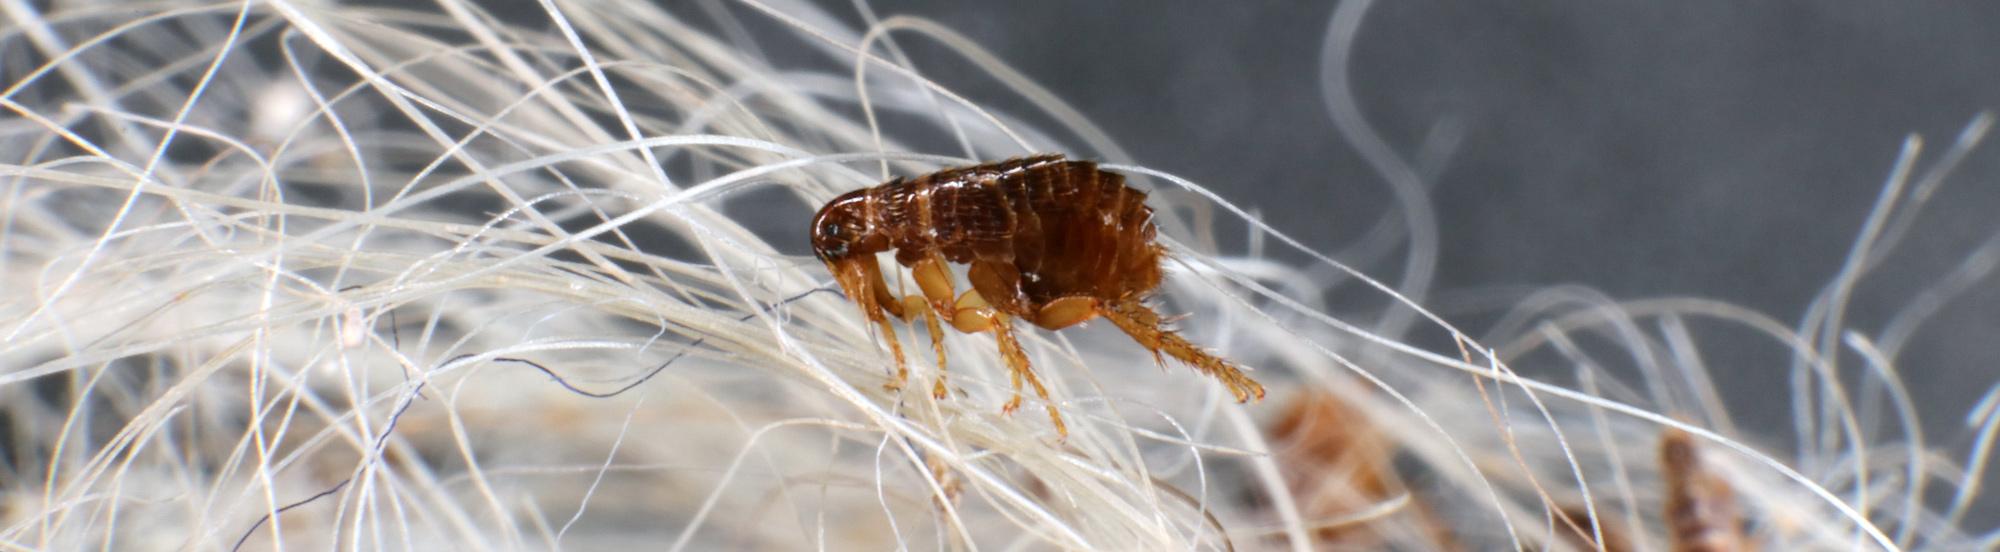 fleas on animal